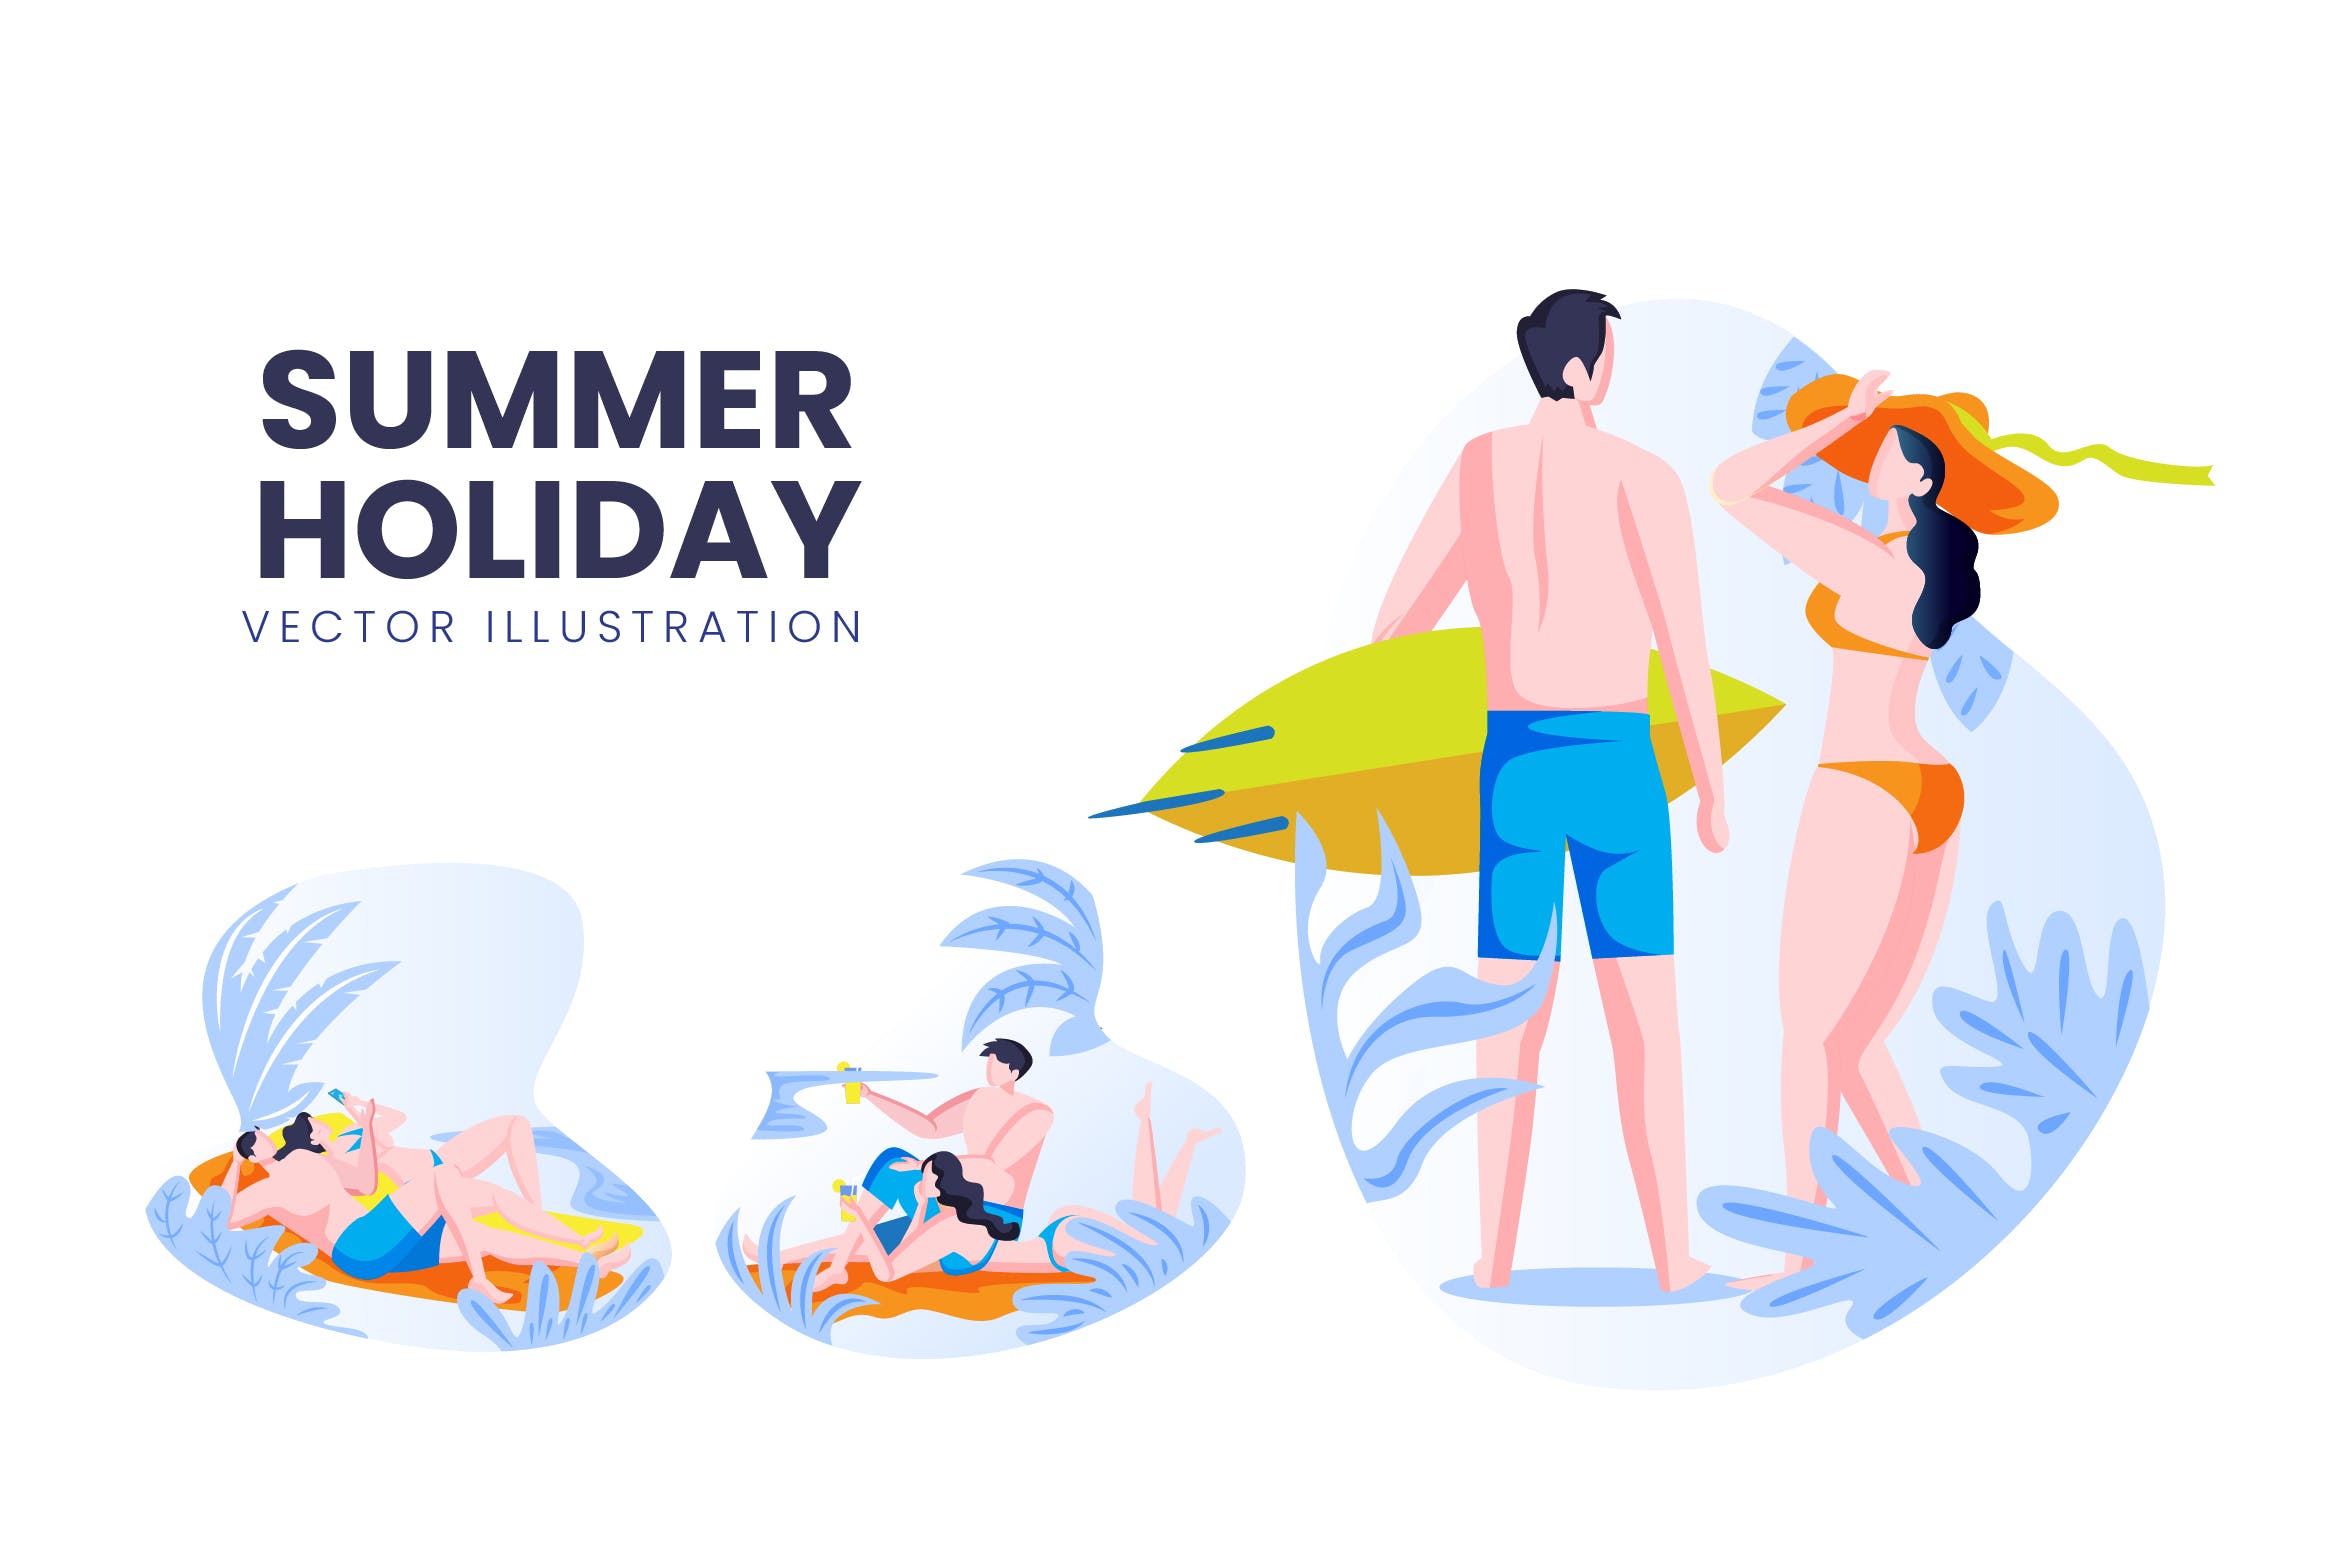 海滩度假主题人物形象素材库精选手绘插画矢量素材 Summer Holiday Vector Character Set插图